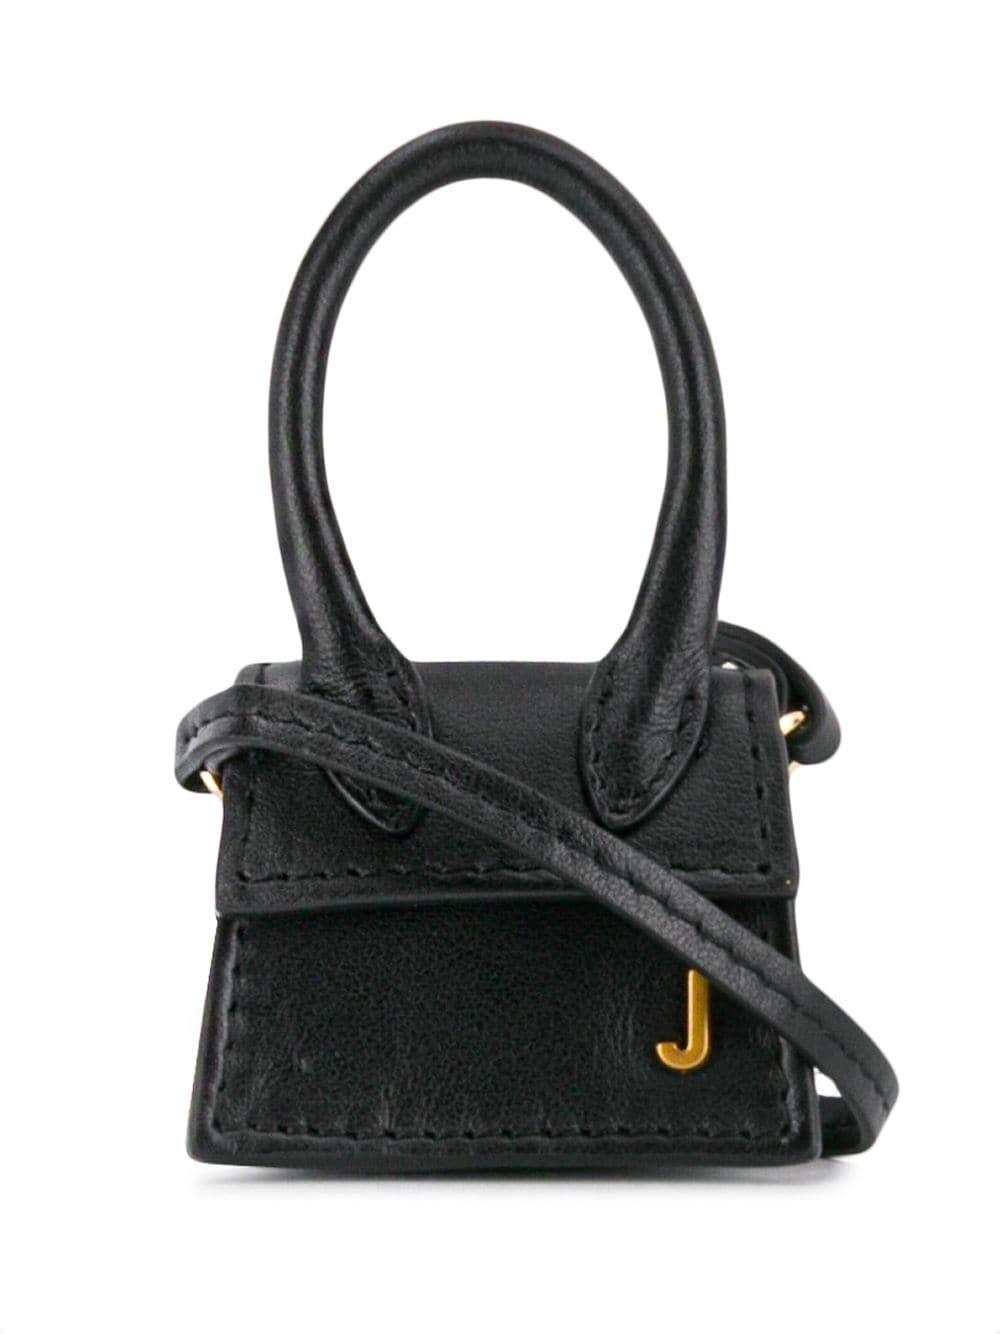 Jacquemus Leather Le Petit Chiquito Mini Bag in Black - Lyst